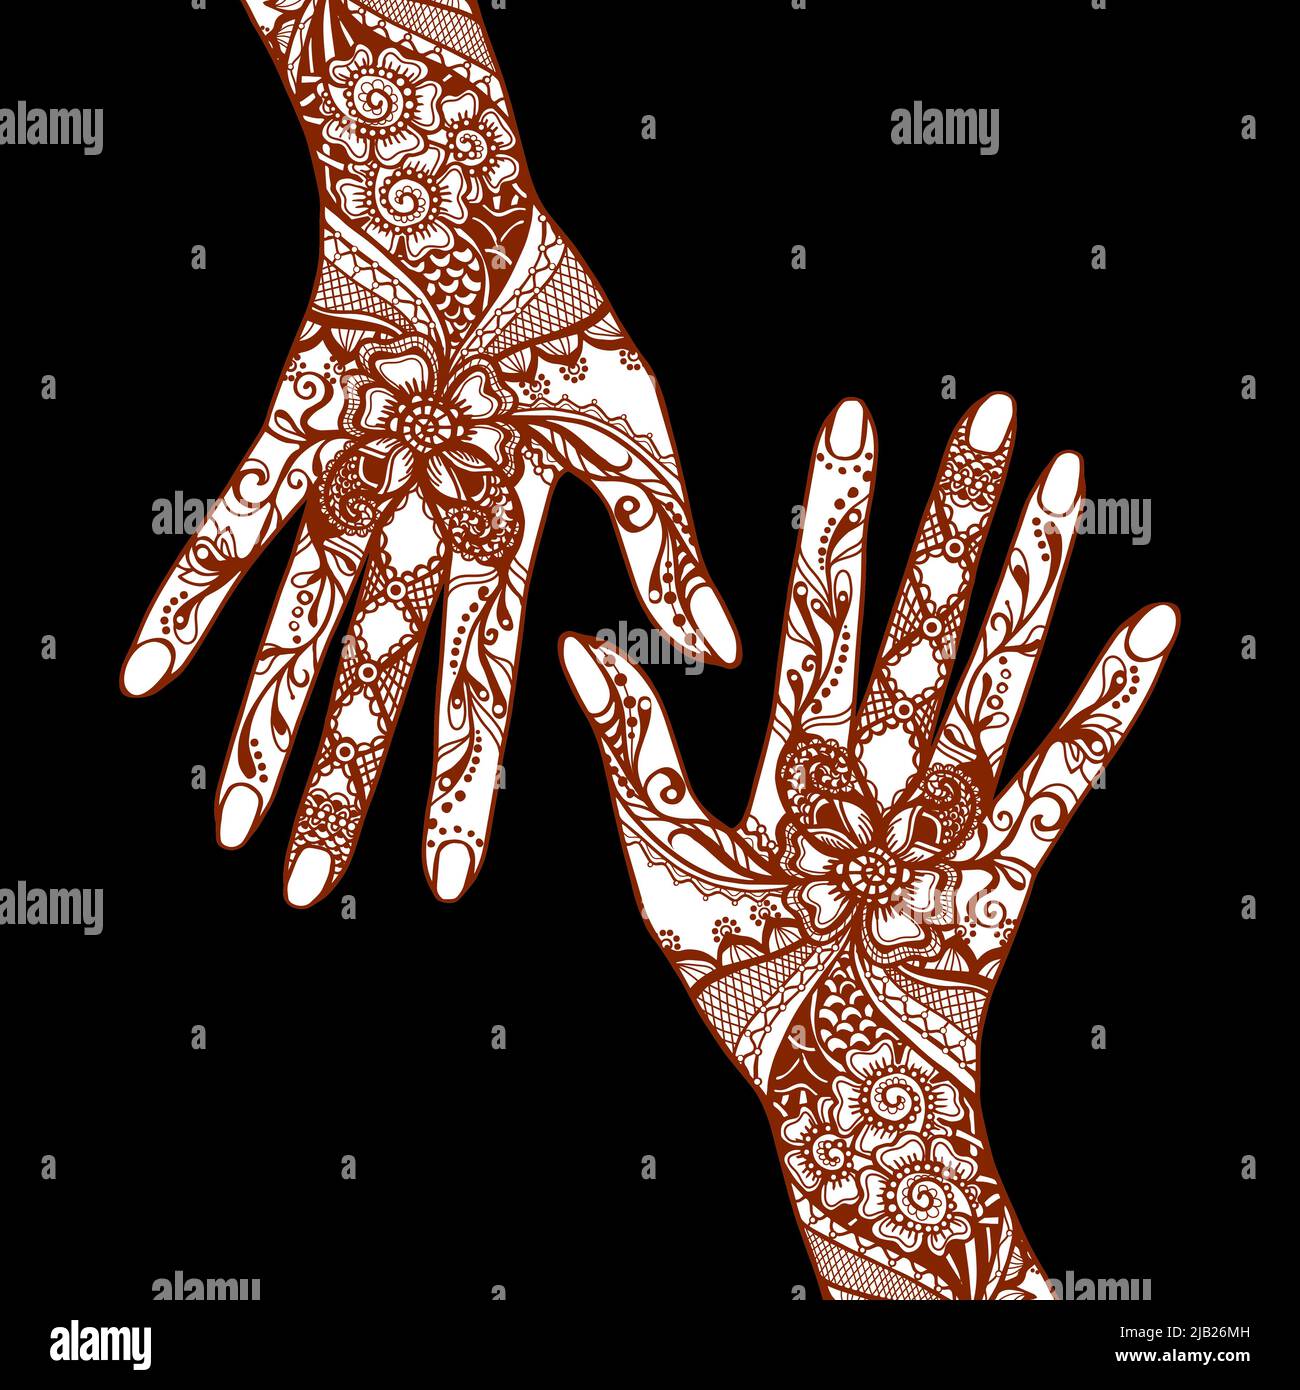 Mains de femmes couvertes de décorations traditionnelles indiennes mehendi henna tatouage sur fond noir illustration vectorielle Illustration de Vecteur